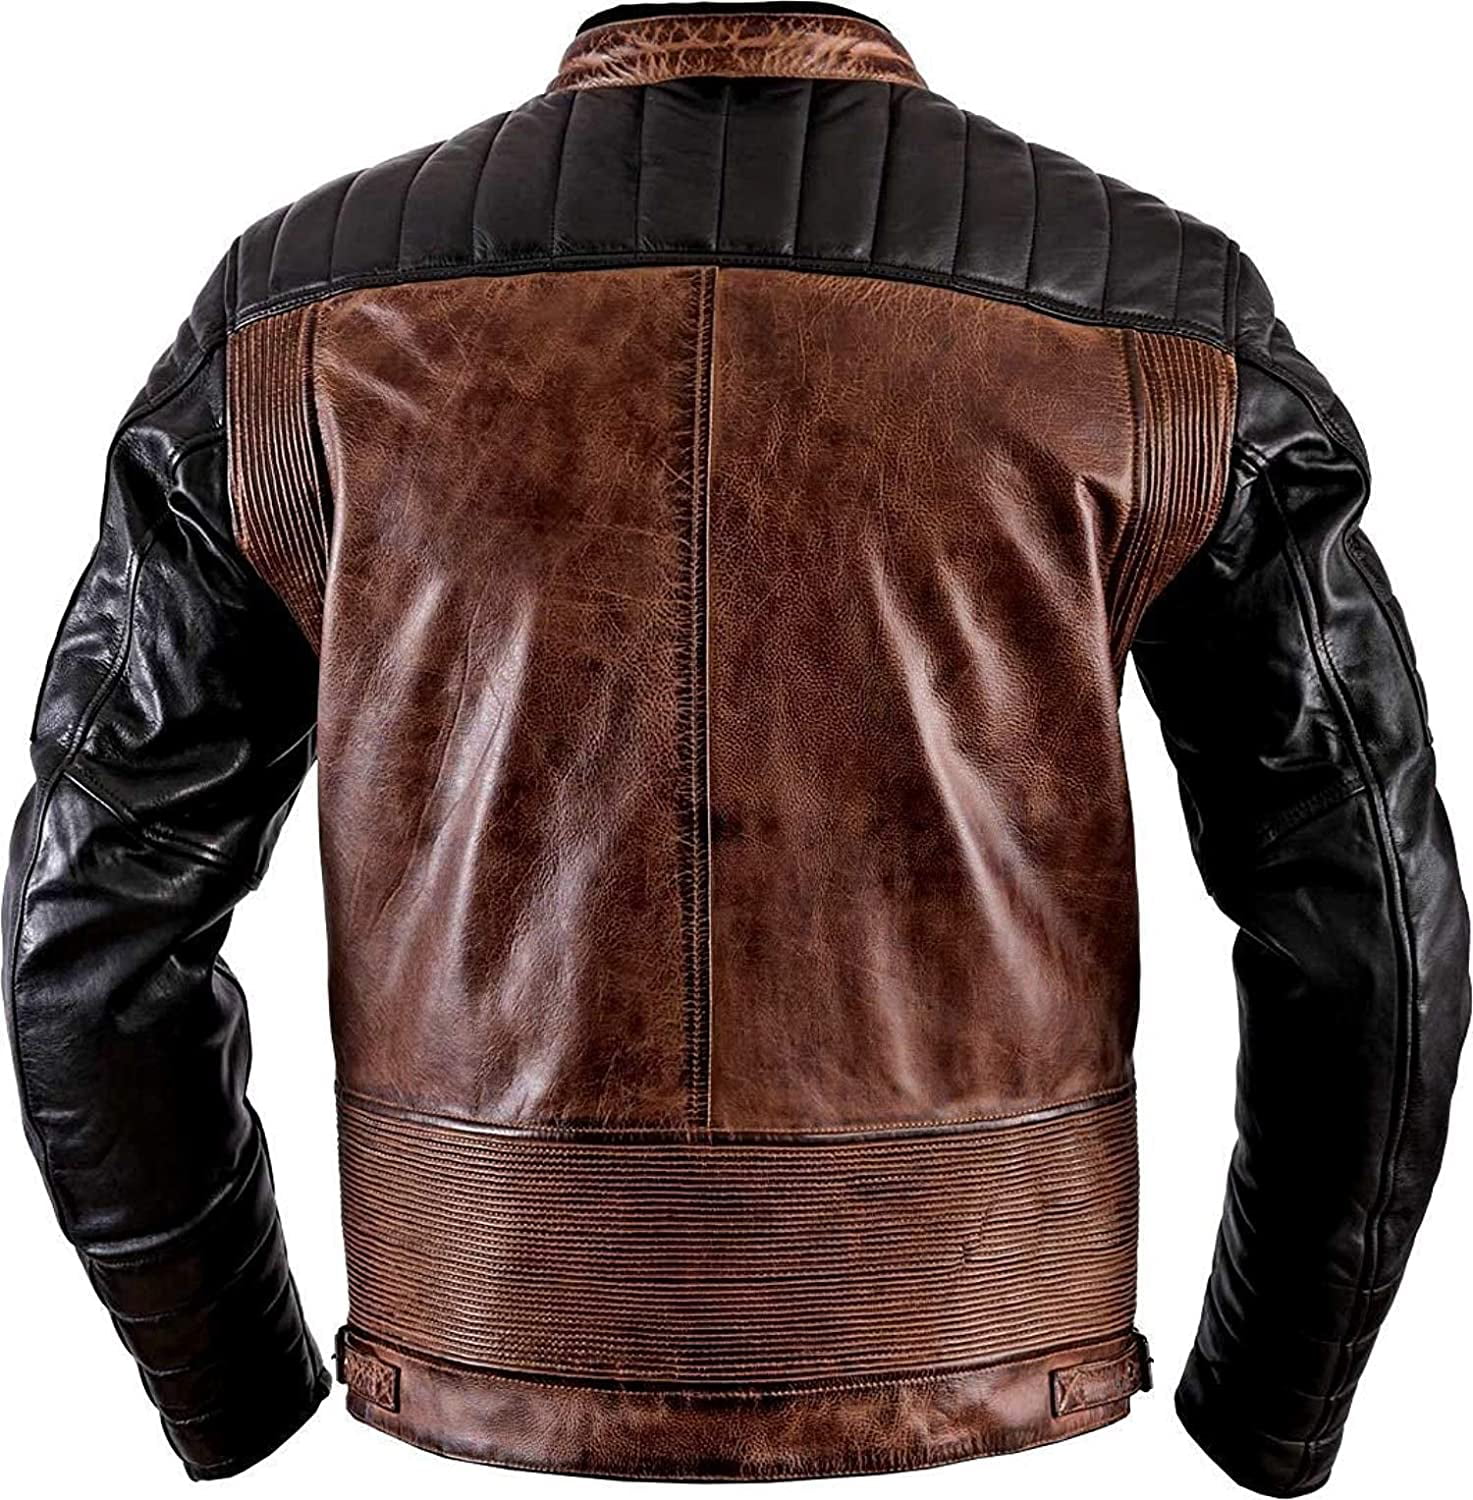 Jackets Hub Designer Cafe Racer Brown Leather Jacket